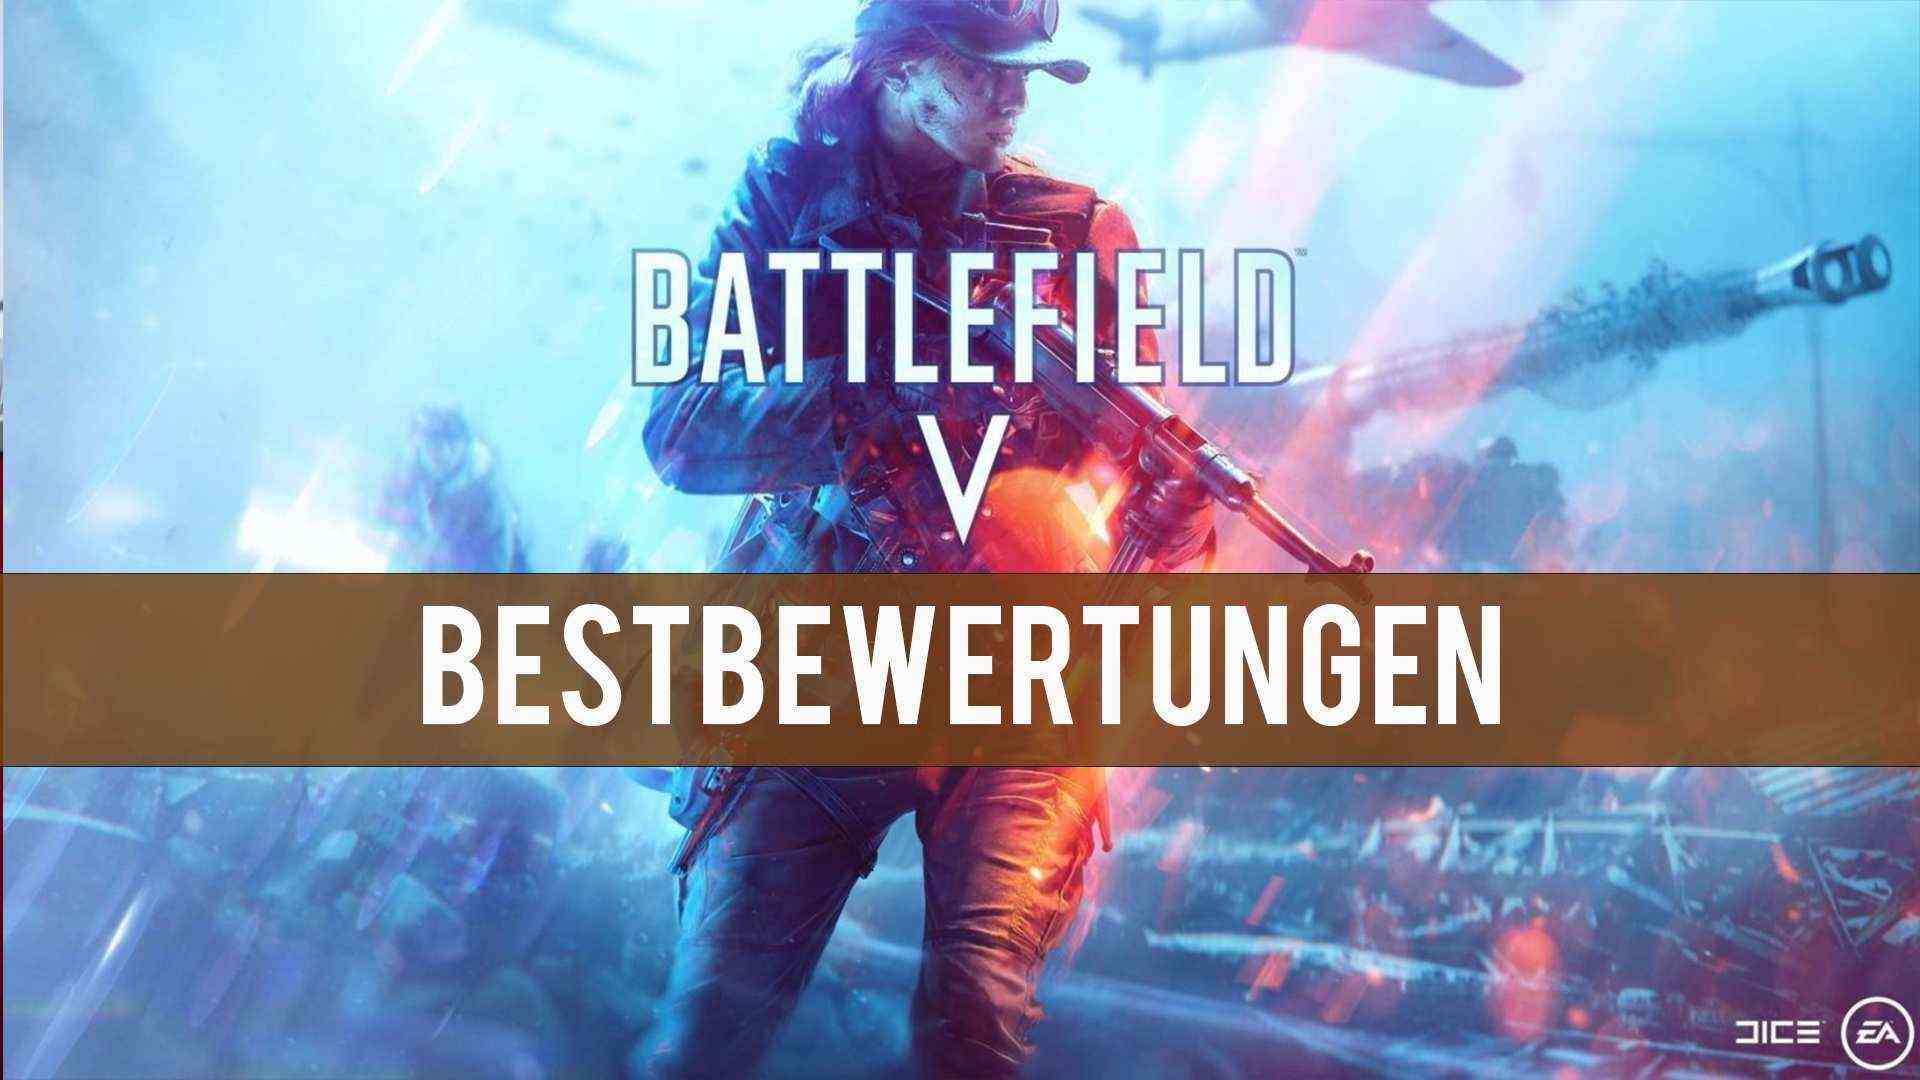 Battlefield 5 - Bestwertungen für den Weltkriegs-Shooter